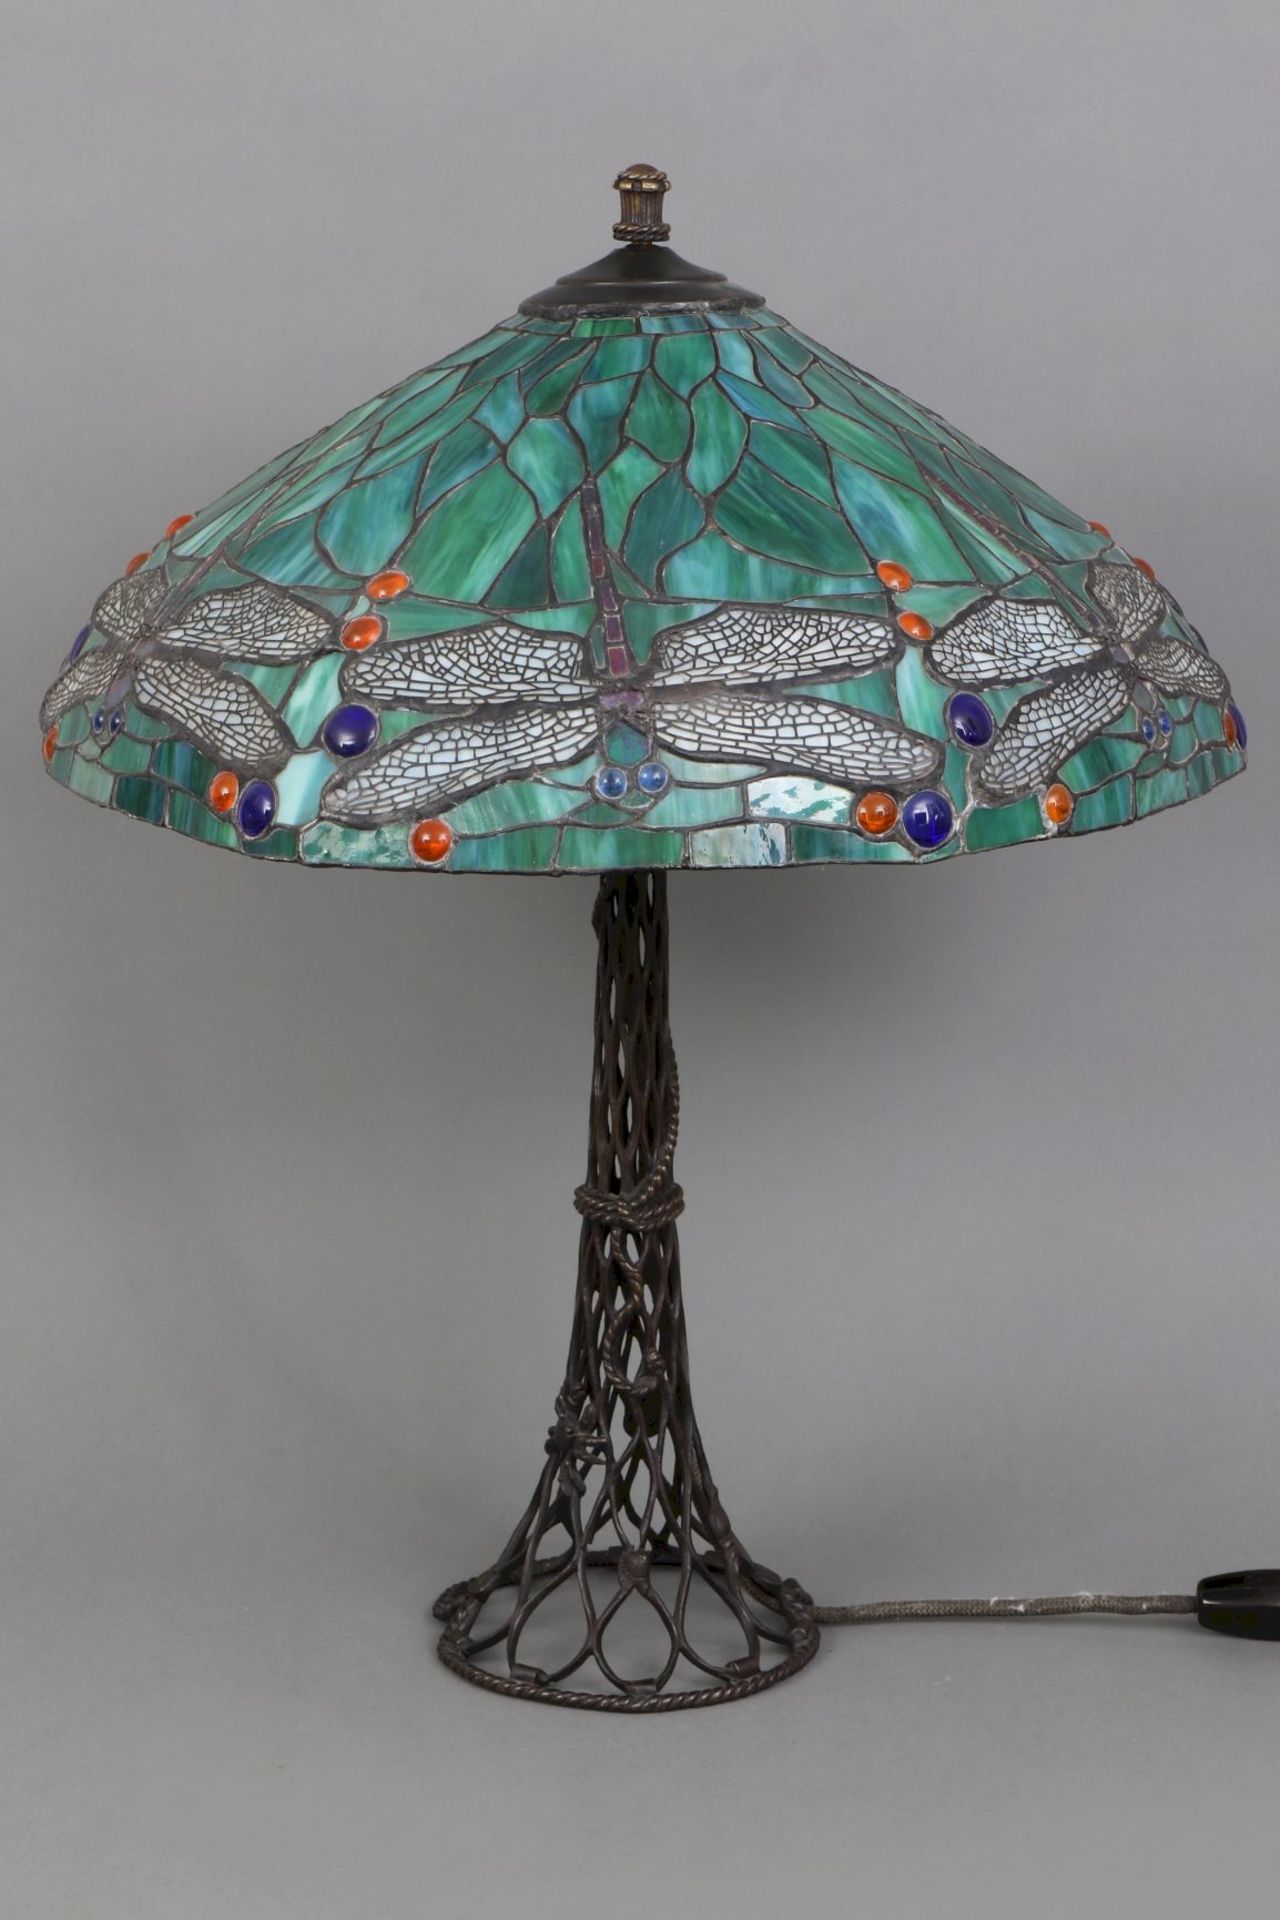 Tischlampe im Stile des Jugendstil (Tiffany)